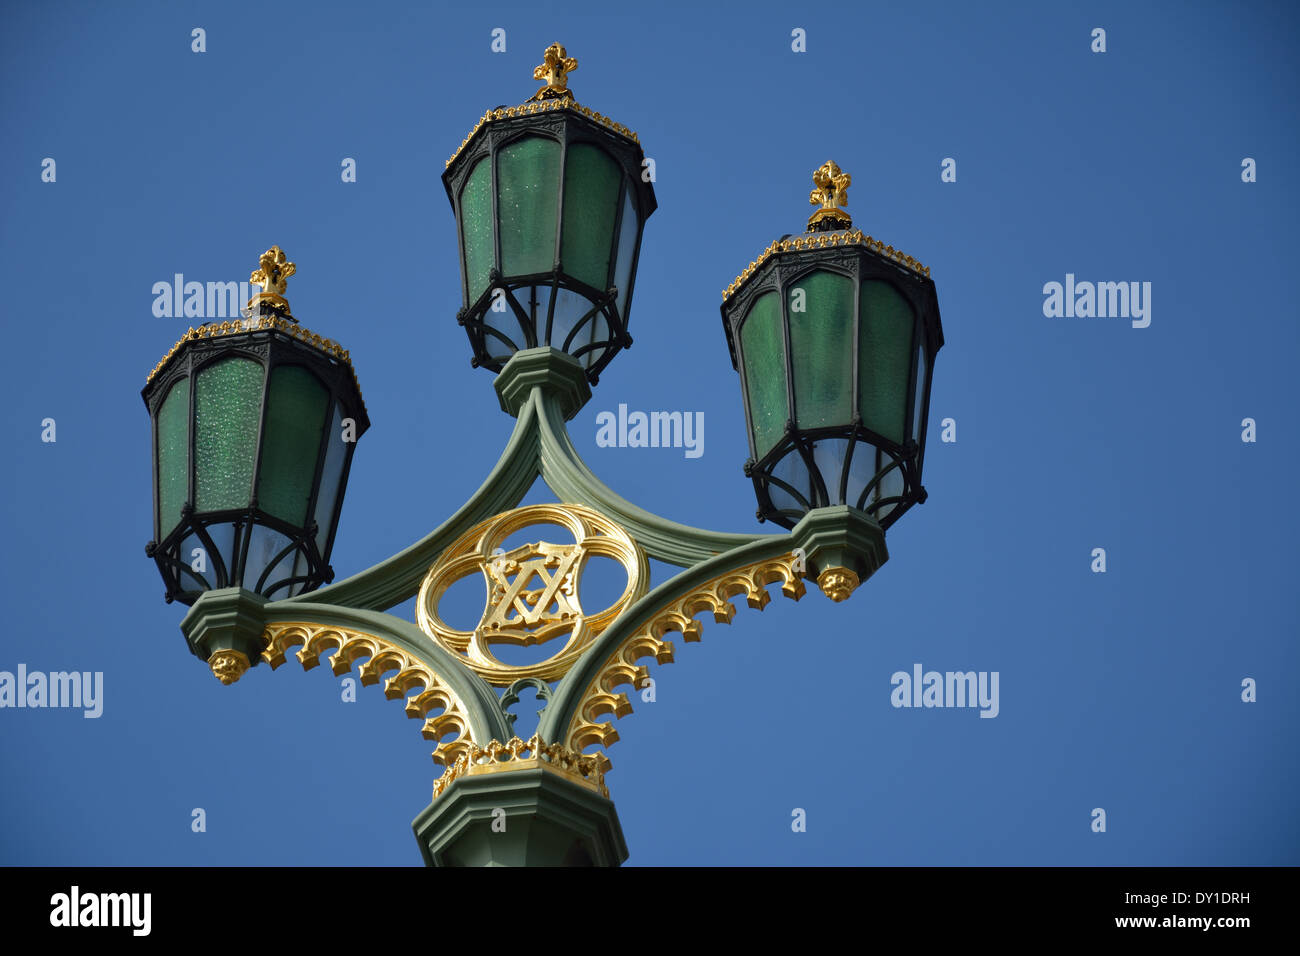 Ornate street lighting on Westminster Bridge, London,UK Stock Photo